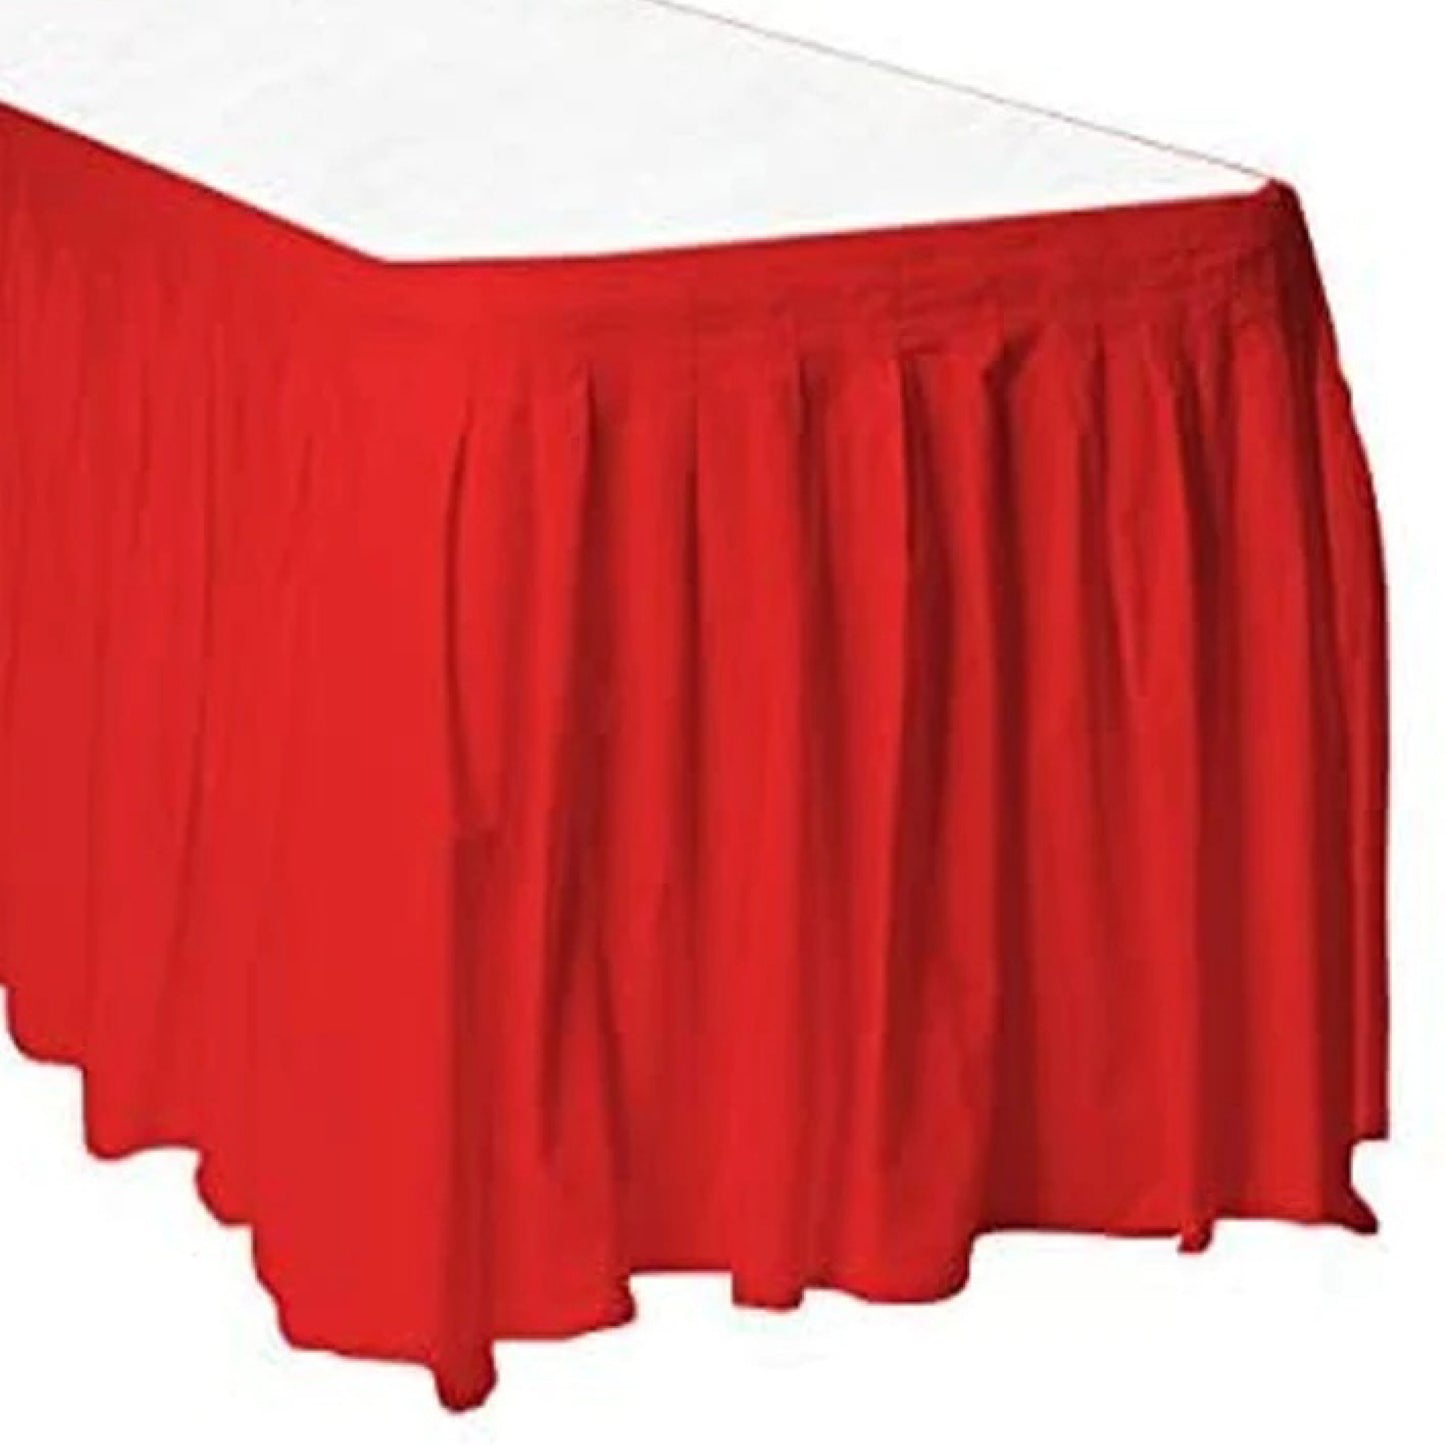 Rectangular Plastic Table Skirt Red 36 x 74 cm Pack of 1